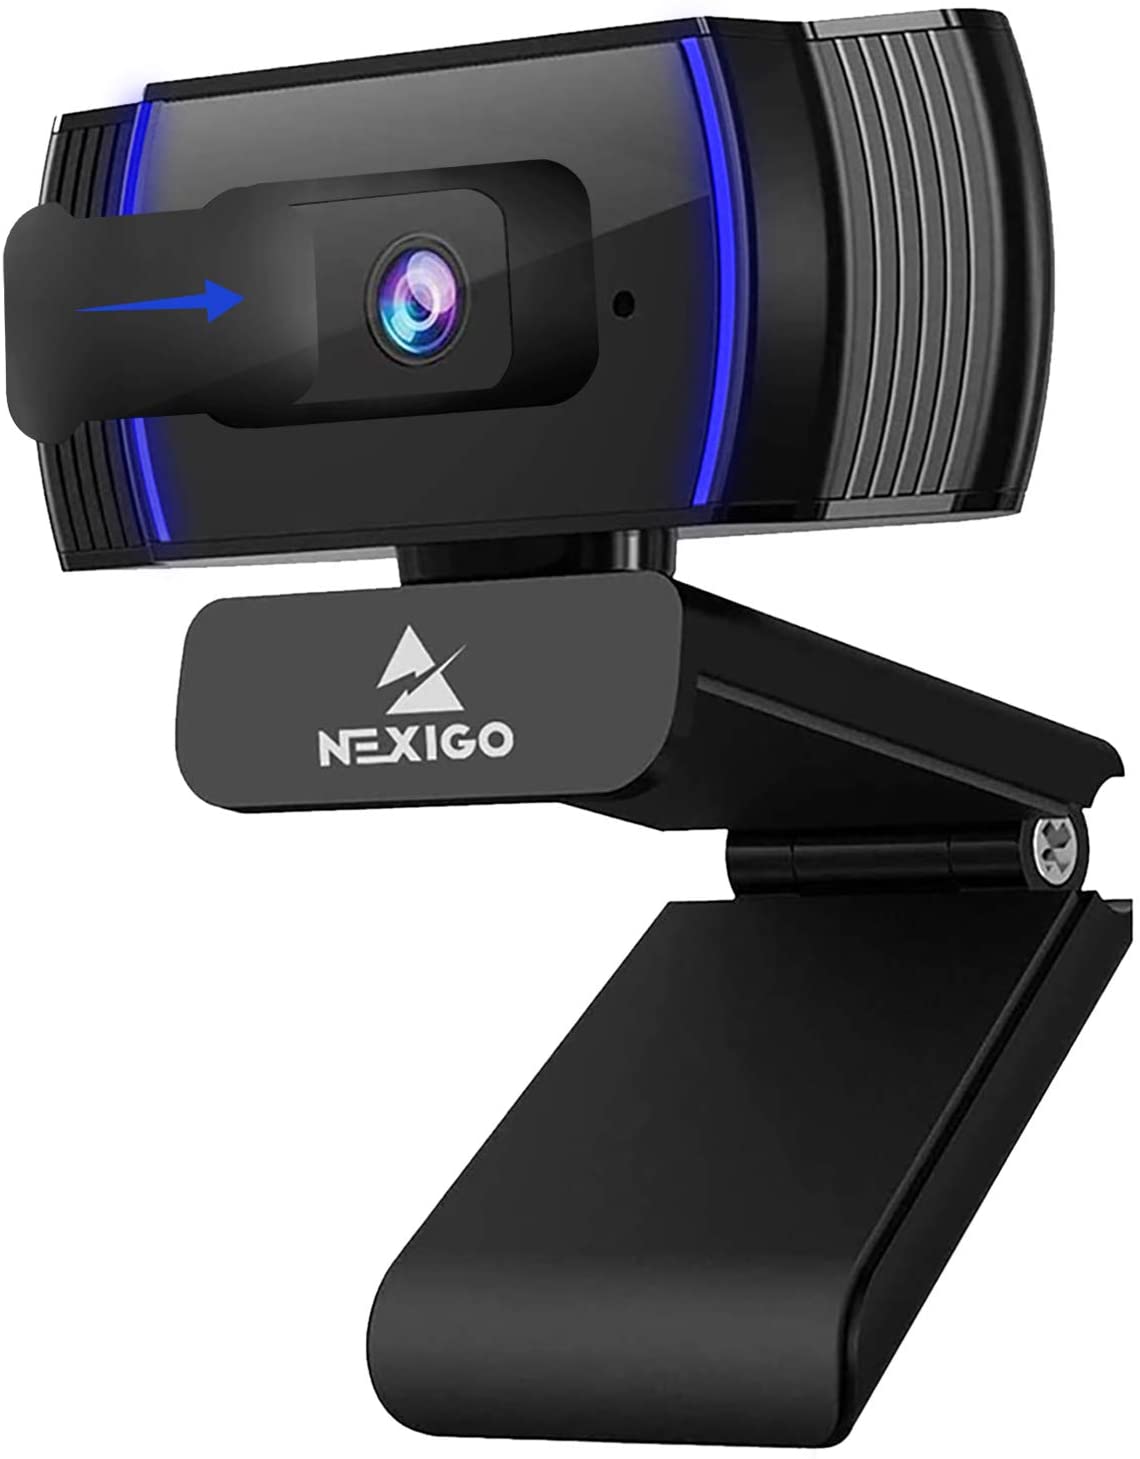 Nexigo - best webcam for Youtube